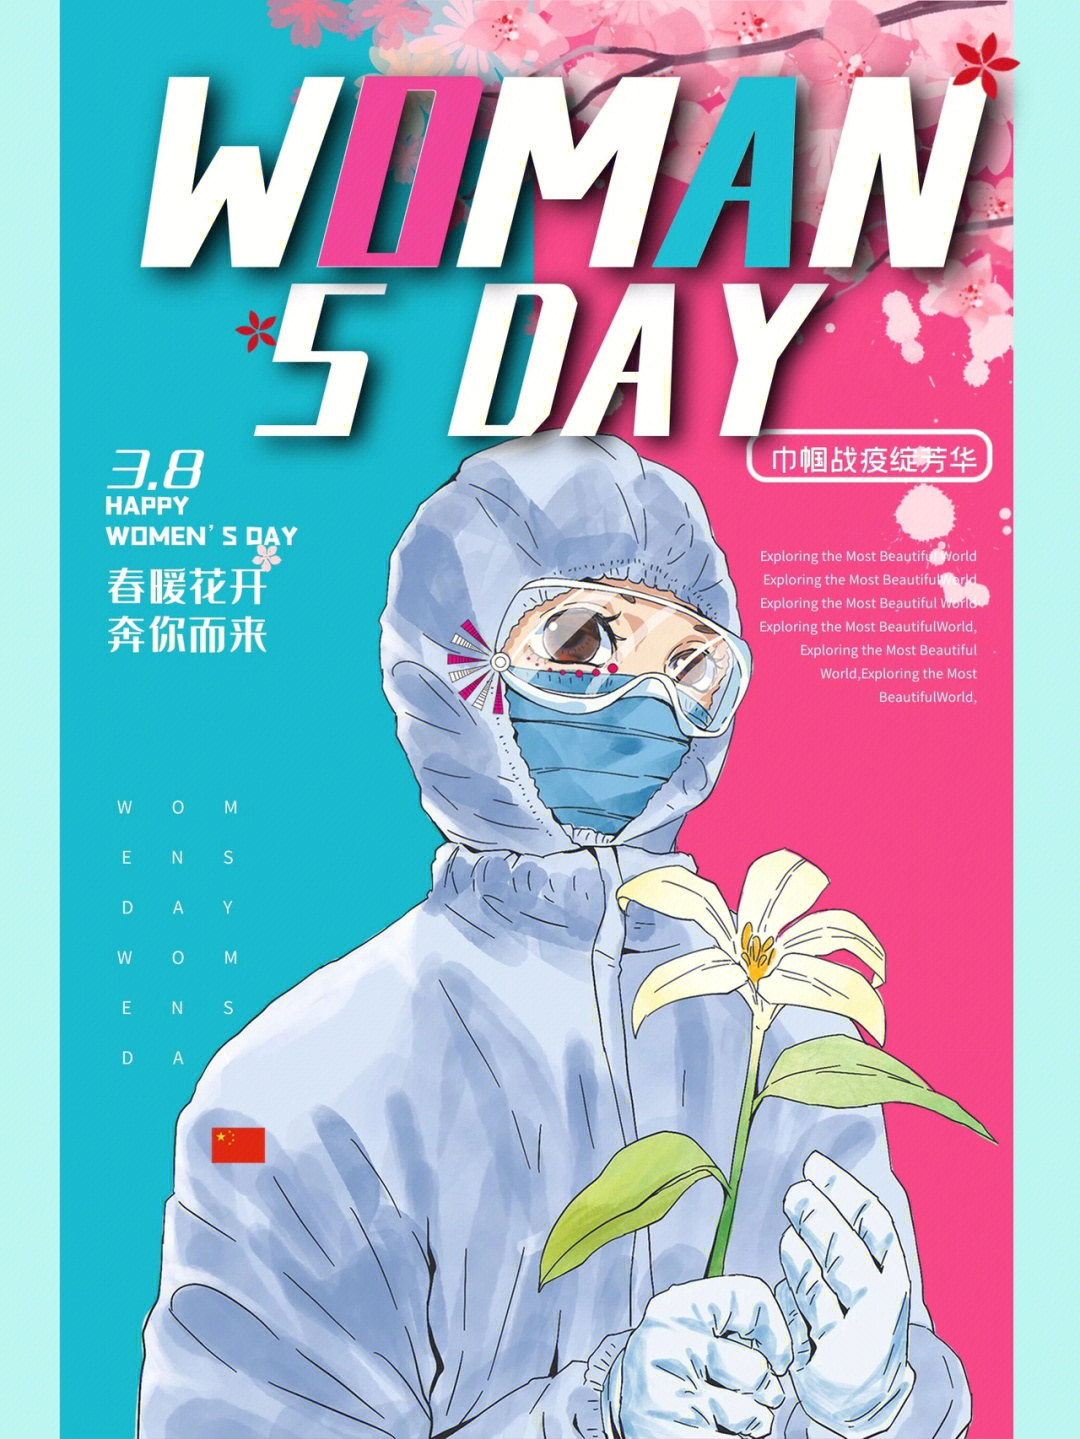 38妇女节致抗疫巾帼英雄们60